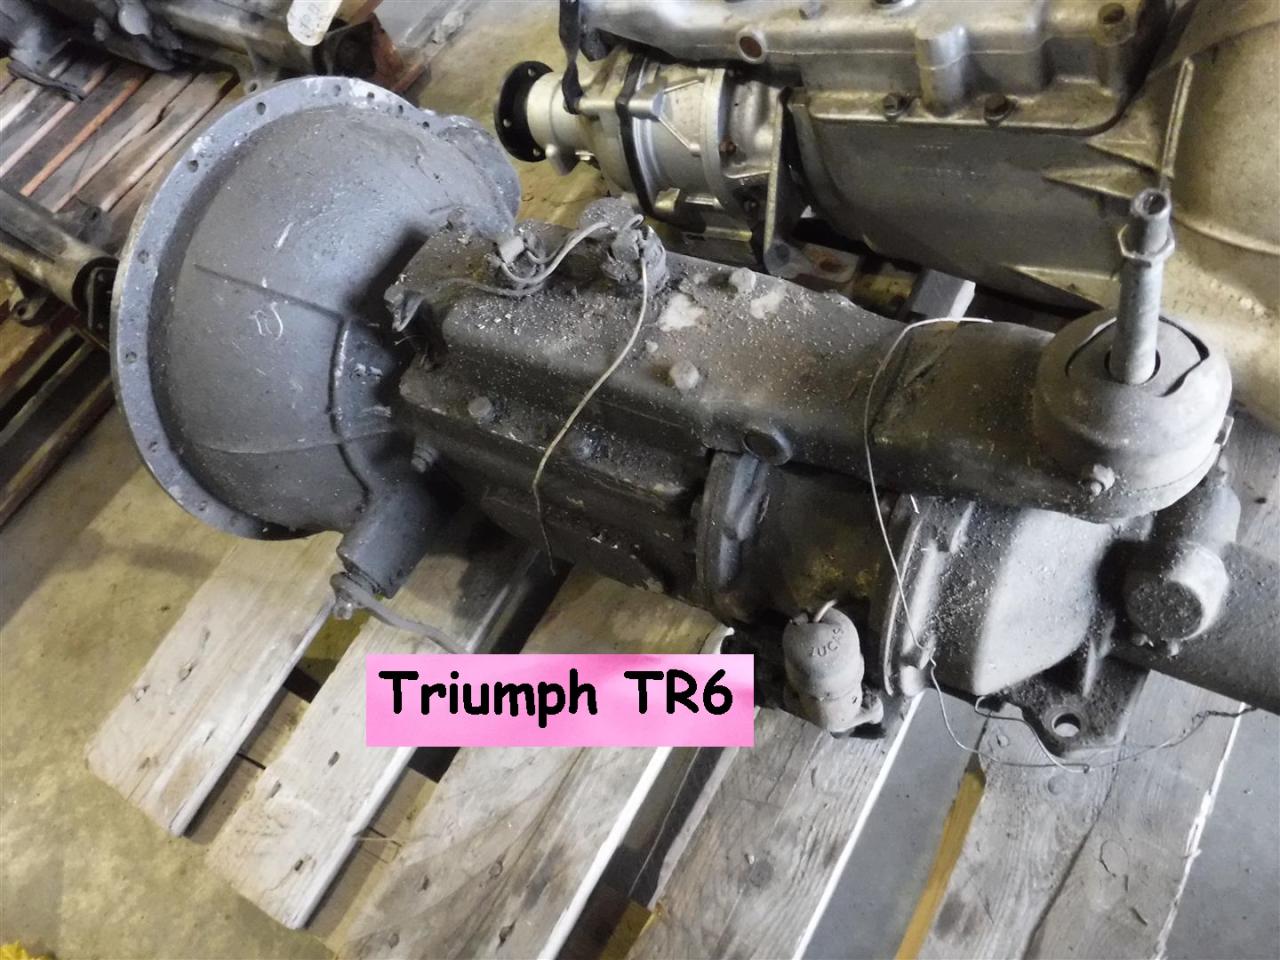 1900 Triumph gearboxes